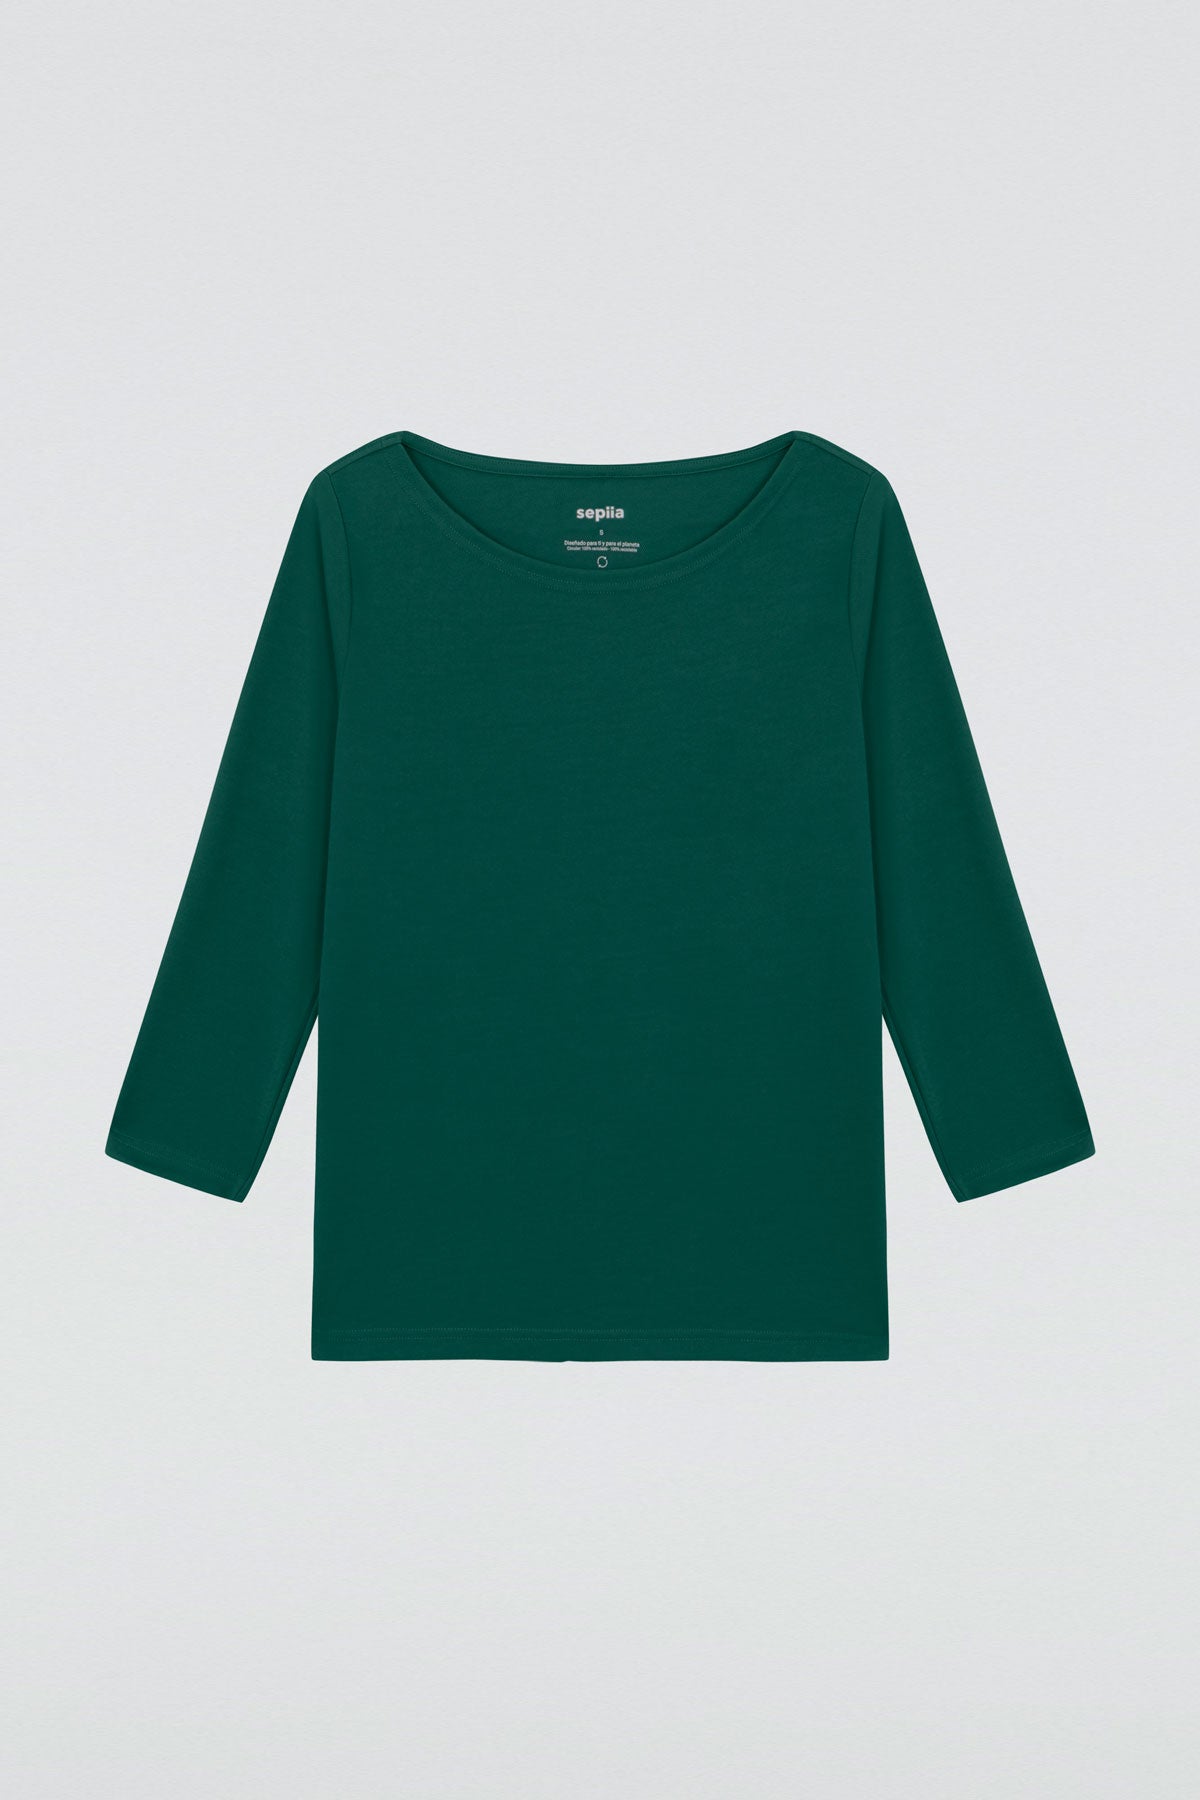 Camiseta para mujer con manga 3/4 y escote barco en color verde titan. Prenda básica perfecta para cualquier ocasión. Foto plano